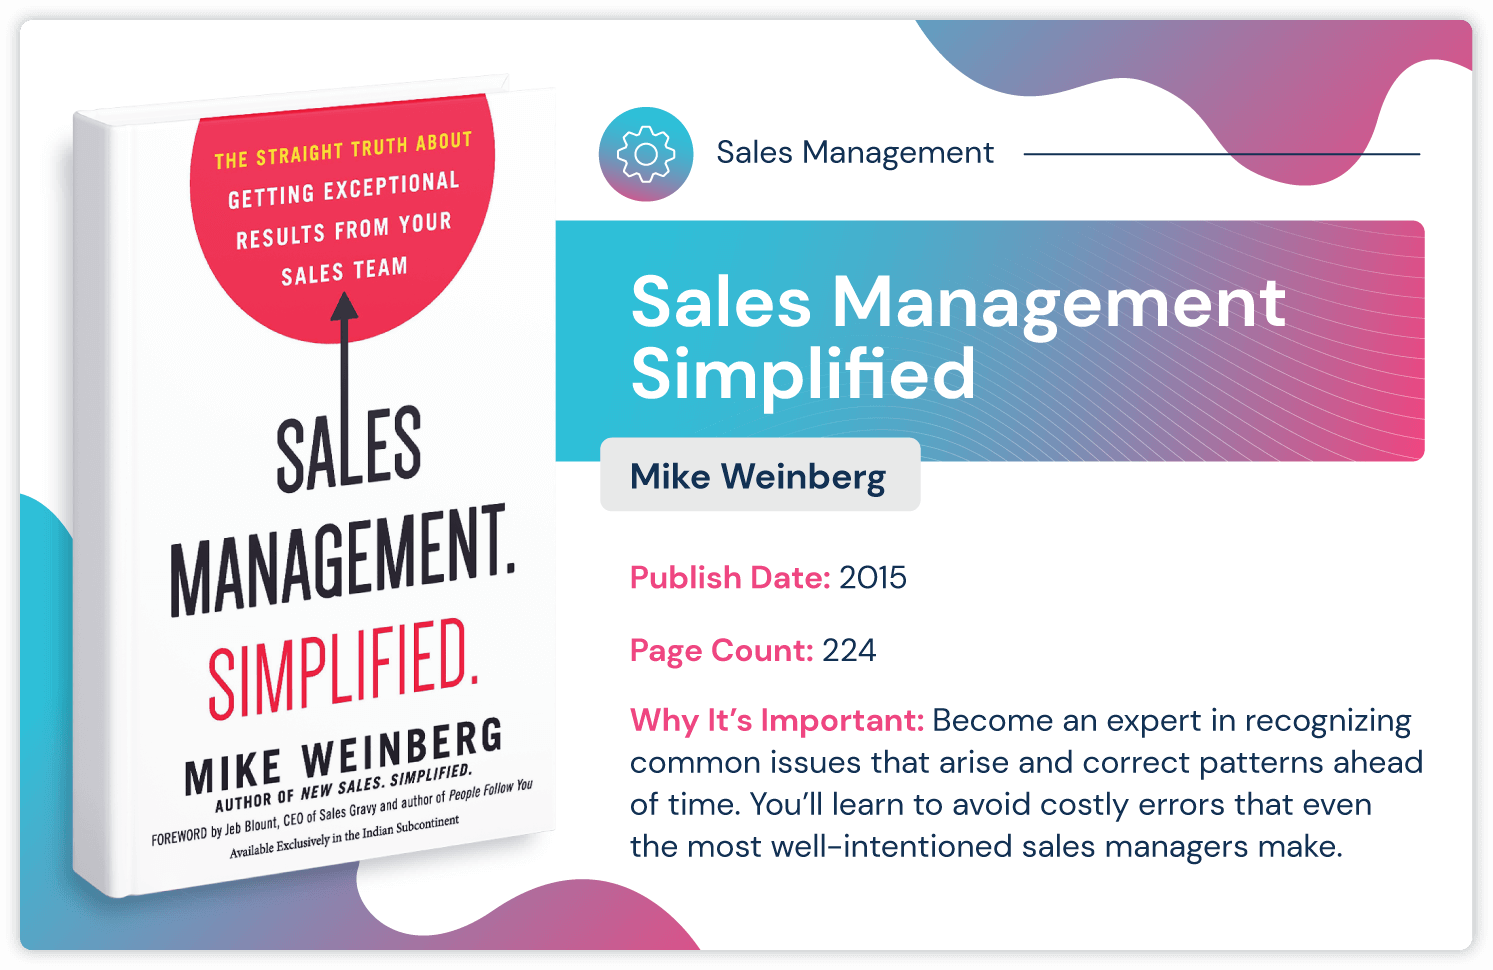 كتاب إدارة المبيعات بعنوان "إدارة المبيعات المبسطة بواسطة مايك واينبرغ حول تجنب أخطاء إدارة المبيعات المكلفة. نُشر في عام 2015 ويبلغ طوله 224 صفحة